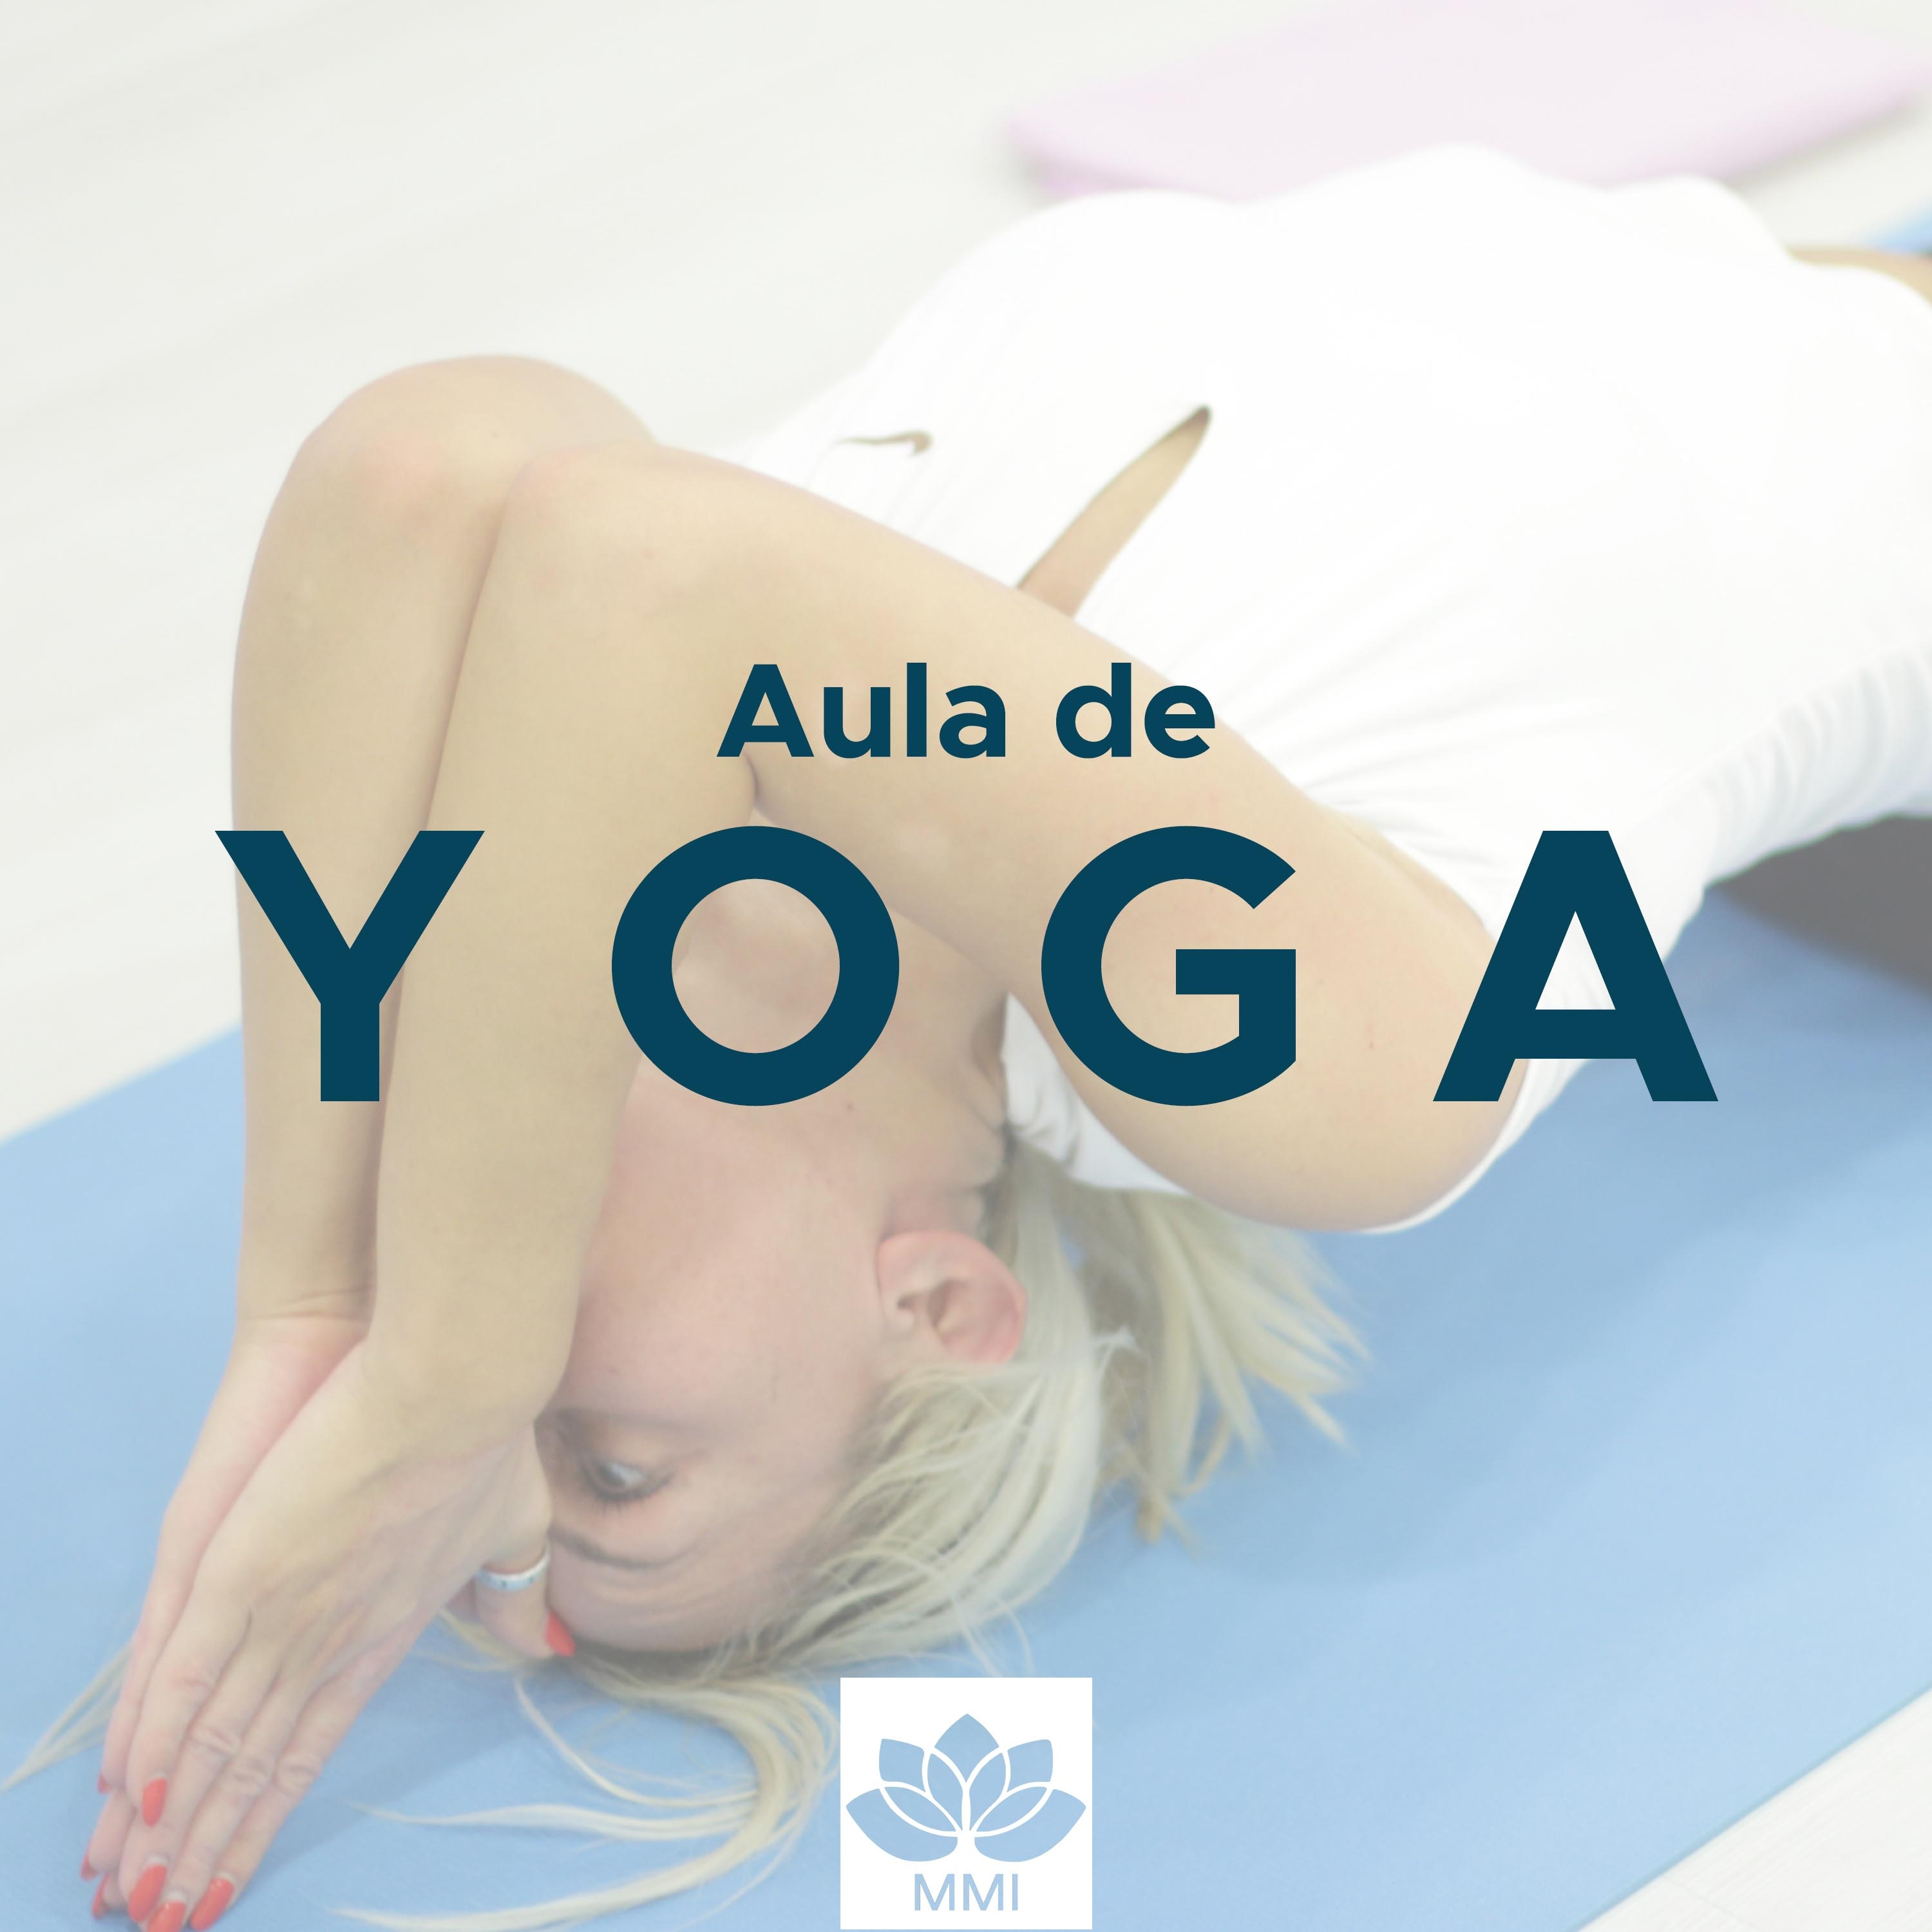 Aula de Yoga: Relaxamento Profundo, Mu sica Relaxante, Mu sica Asia tica com Sons da Natureza